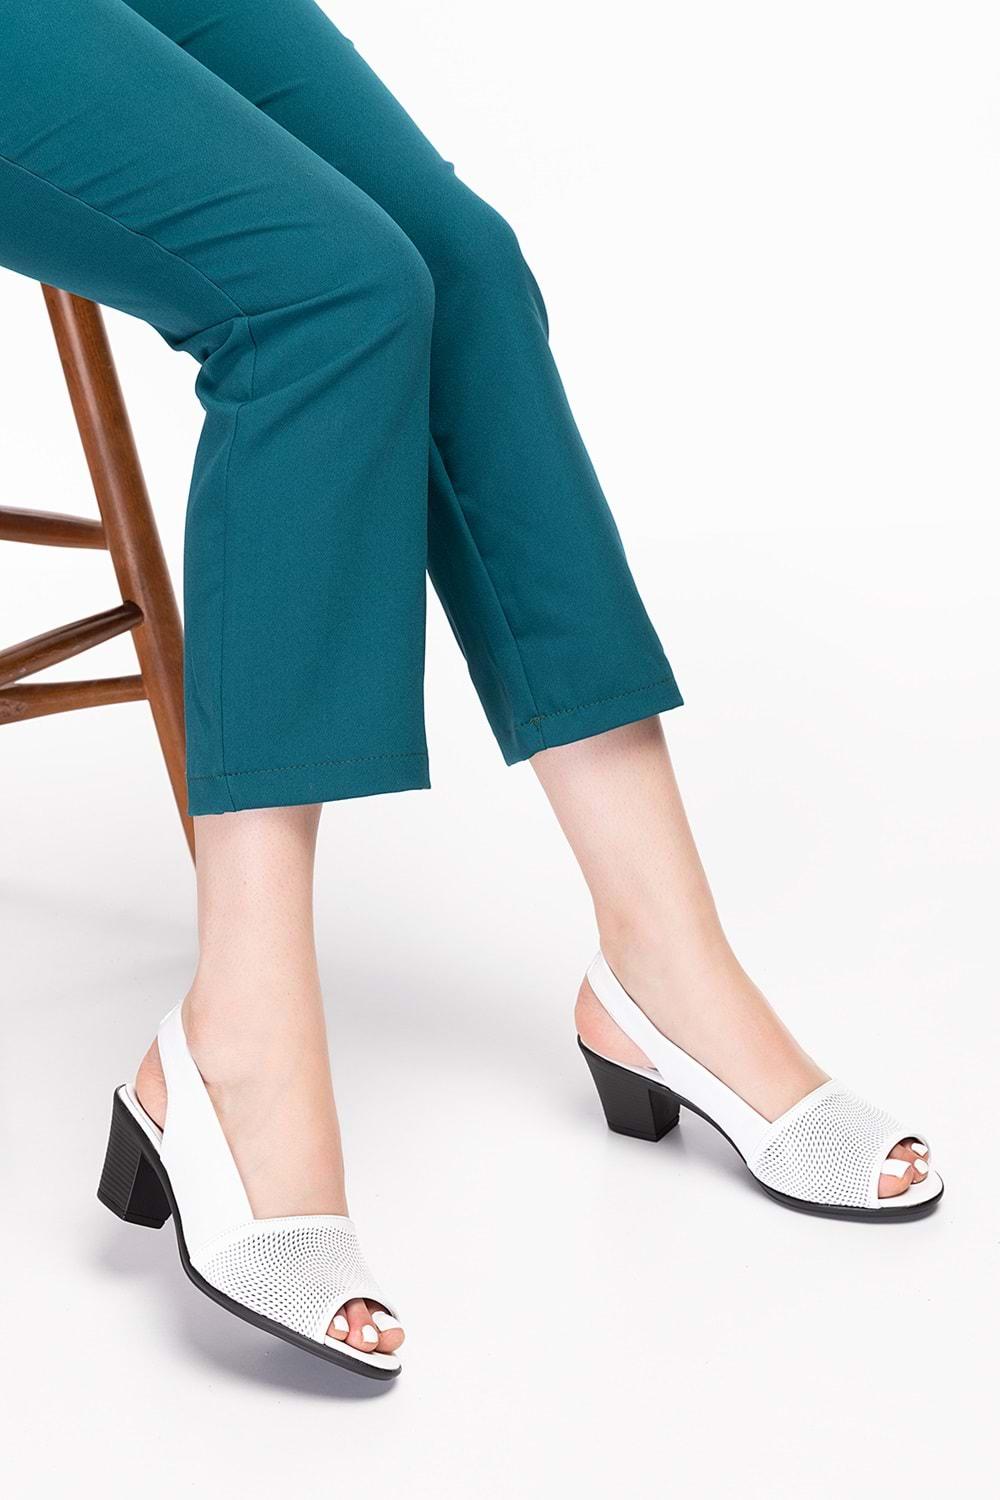 Gondol Kadın Hakiki Deri Klasik Topuklu Ayakkabı vdt.262 - Beyaz - 34